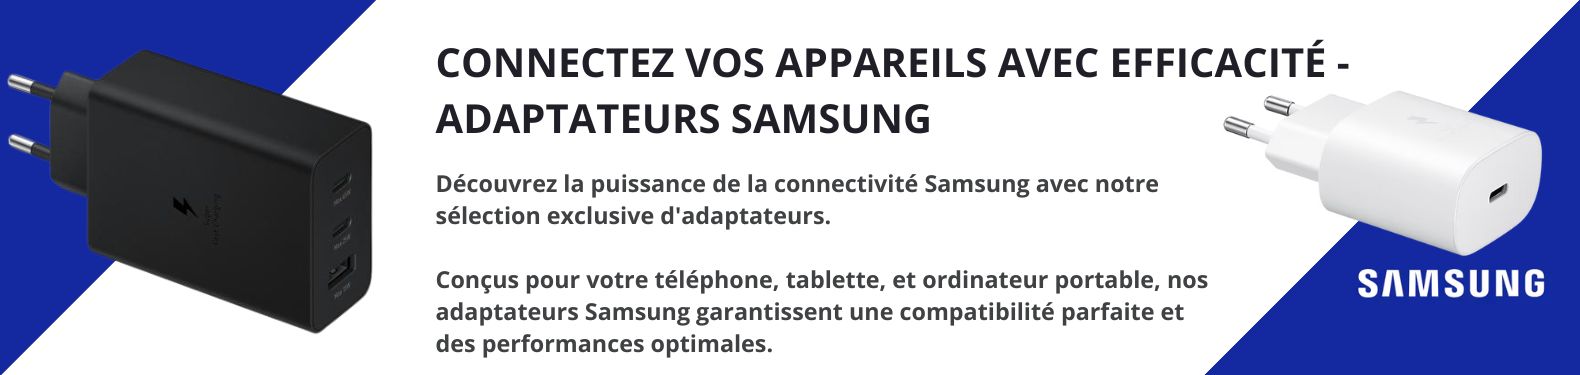 Adaptateurs-Samsung-allintech